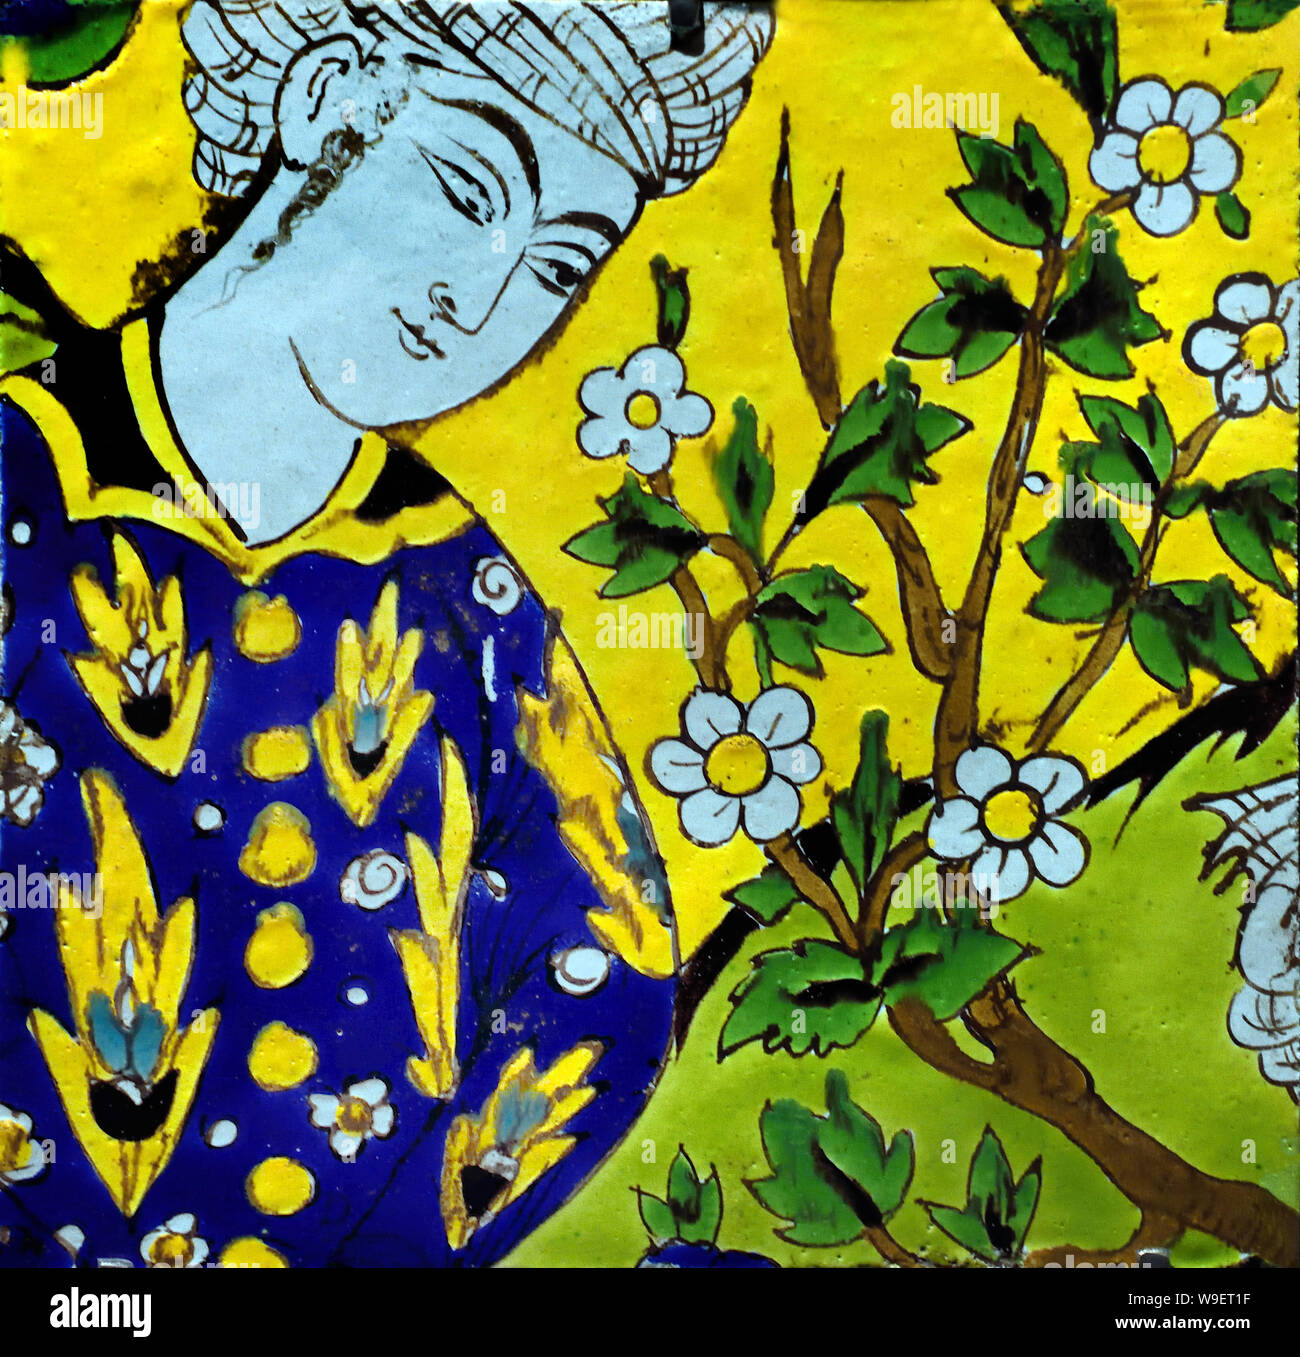 Azulejo con la figura 1650-1700 Ispahan Irán islámico iraní de Isfahan arte ( floreció desde 1050 a 1722, especialmente en los siglos XVI y XVII, bajo la dinastía Safawí cuando se convirtió en la capital de Persia por segunda vez en su historia bajo el Shah Abbas el Grande. ) Foto de stock